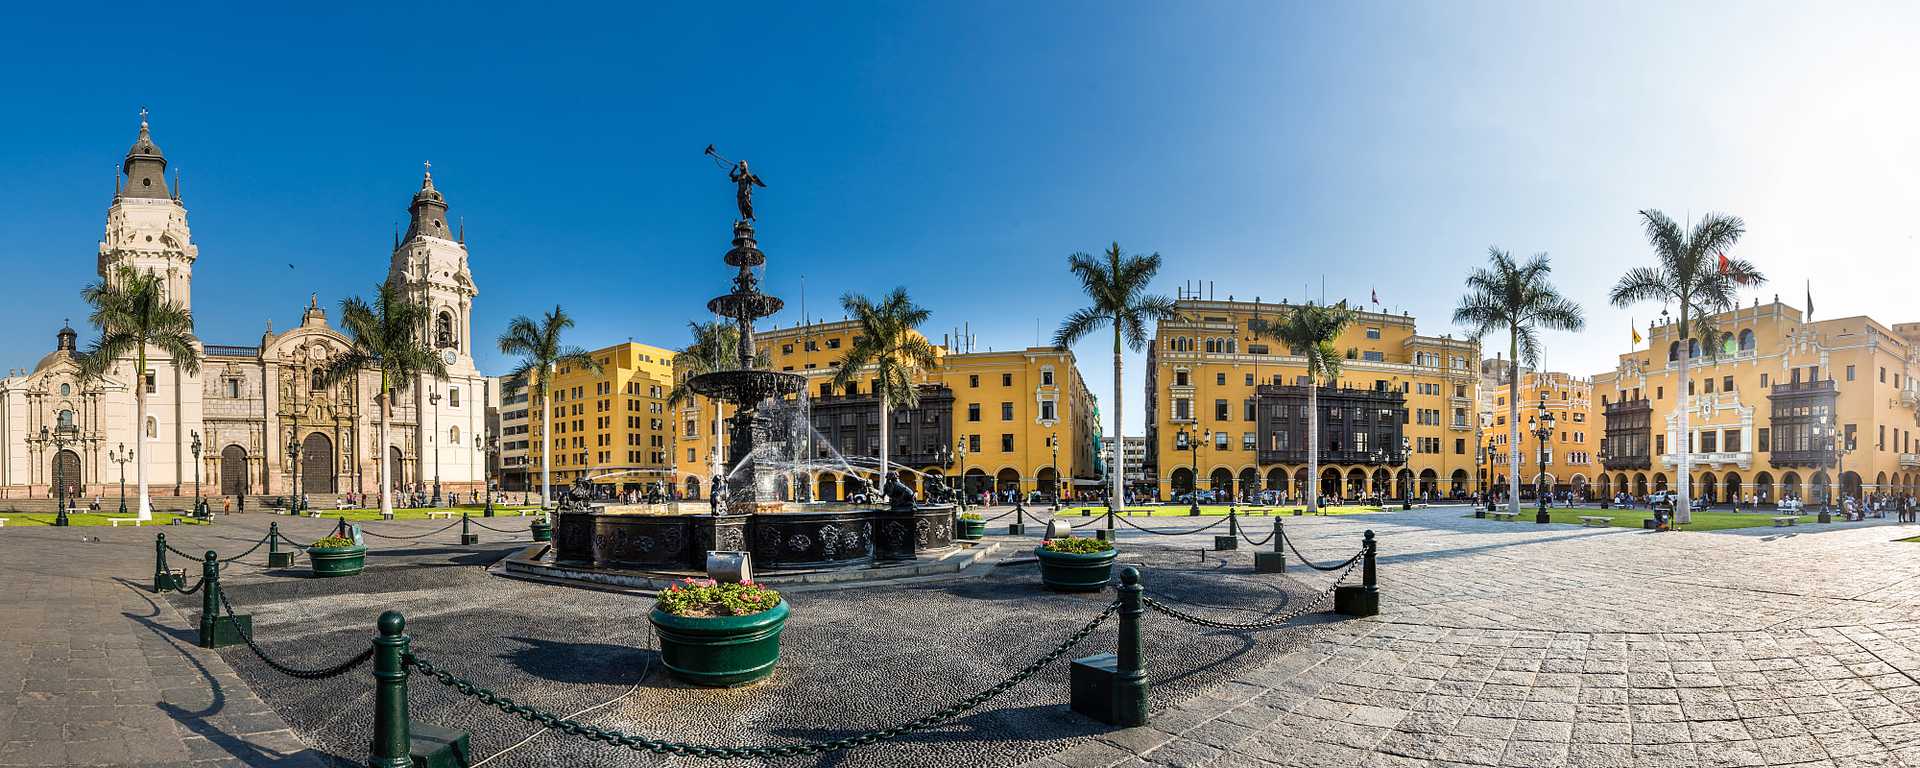 Plaza De Armas De Lima in Peru